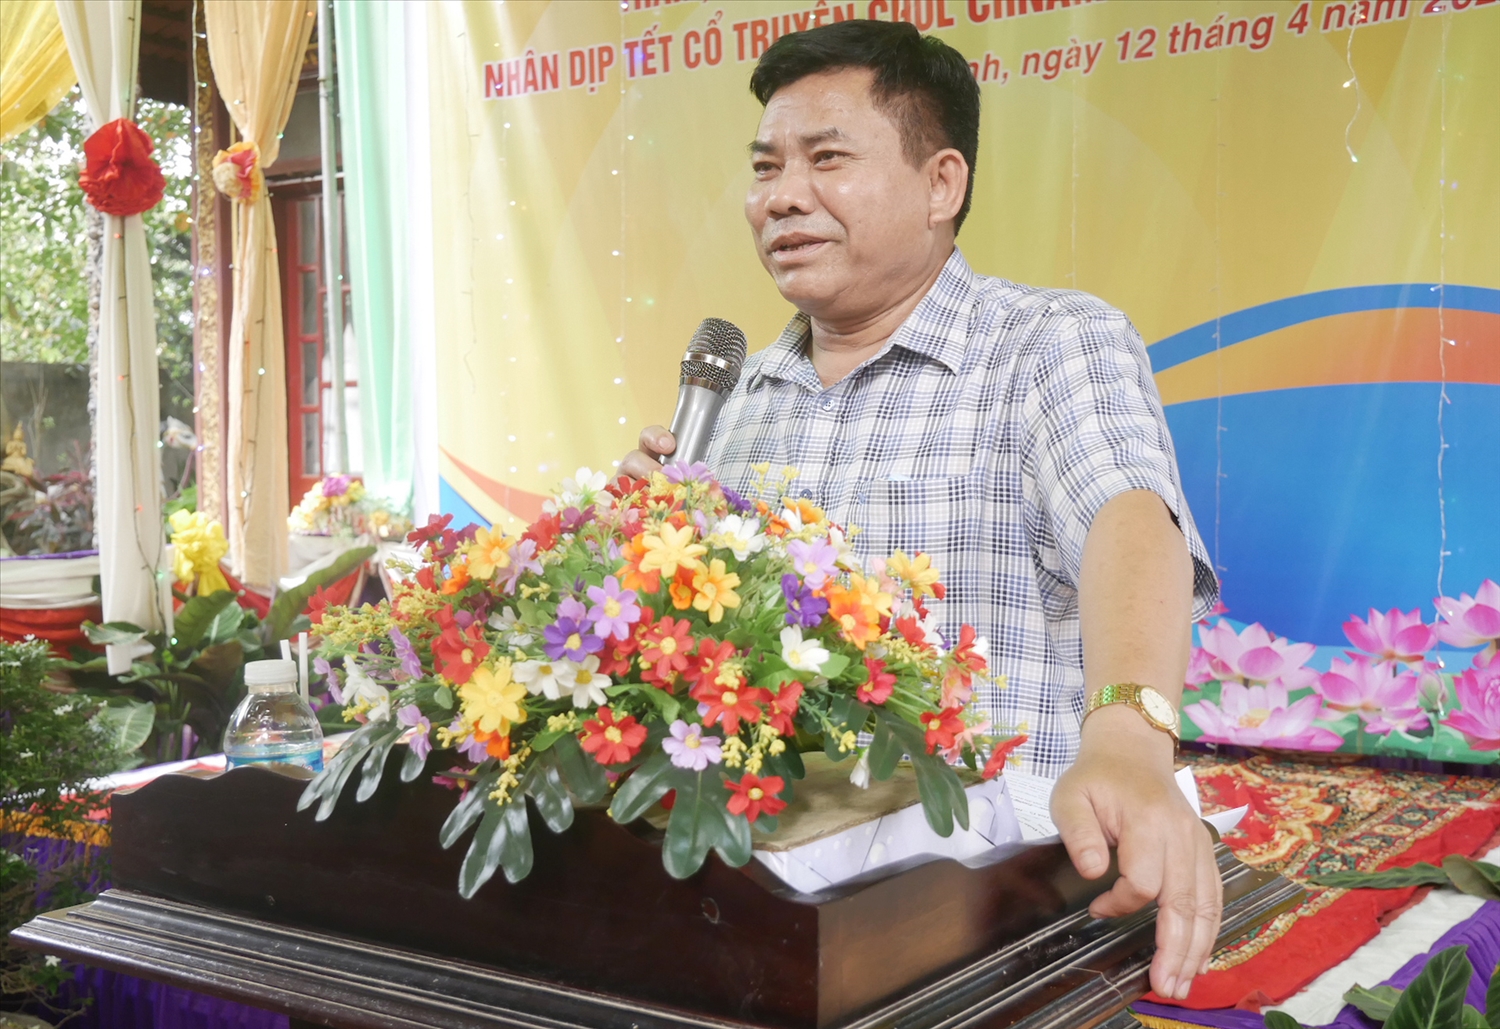 Thứ Trưởng, Phó Chủ nhiệm Y Thông, phát biểu chúc mừng Tết cổ truyền Chôl Chnăm Thmây đồng bào Khmer tại các điểm Đoàn đến thăm